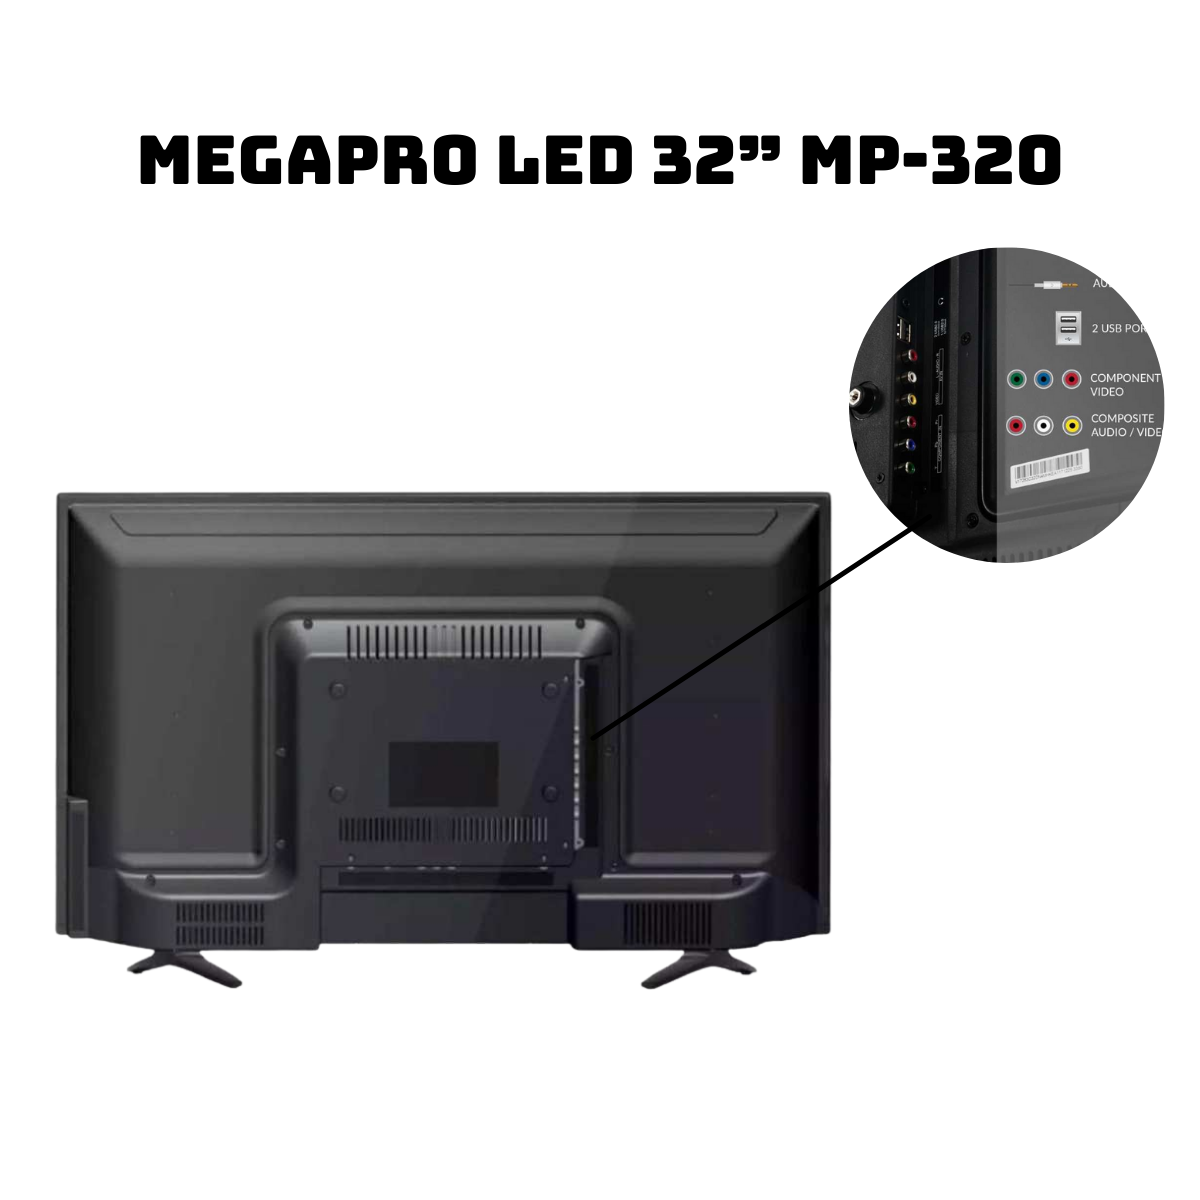 Megapro LED 32” MP-320